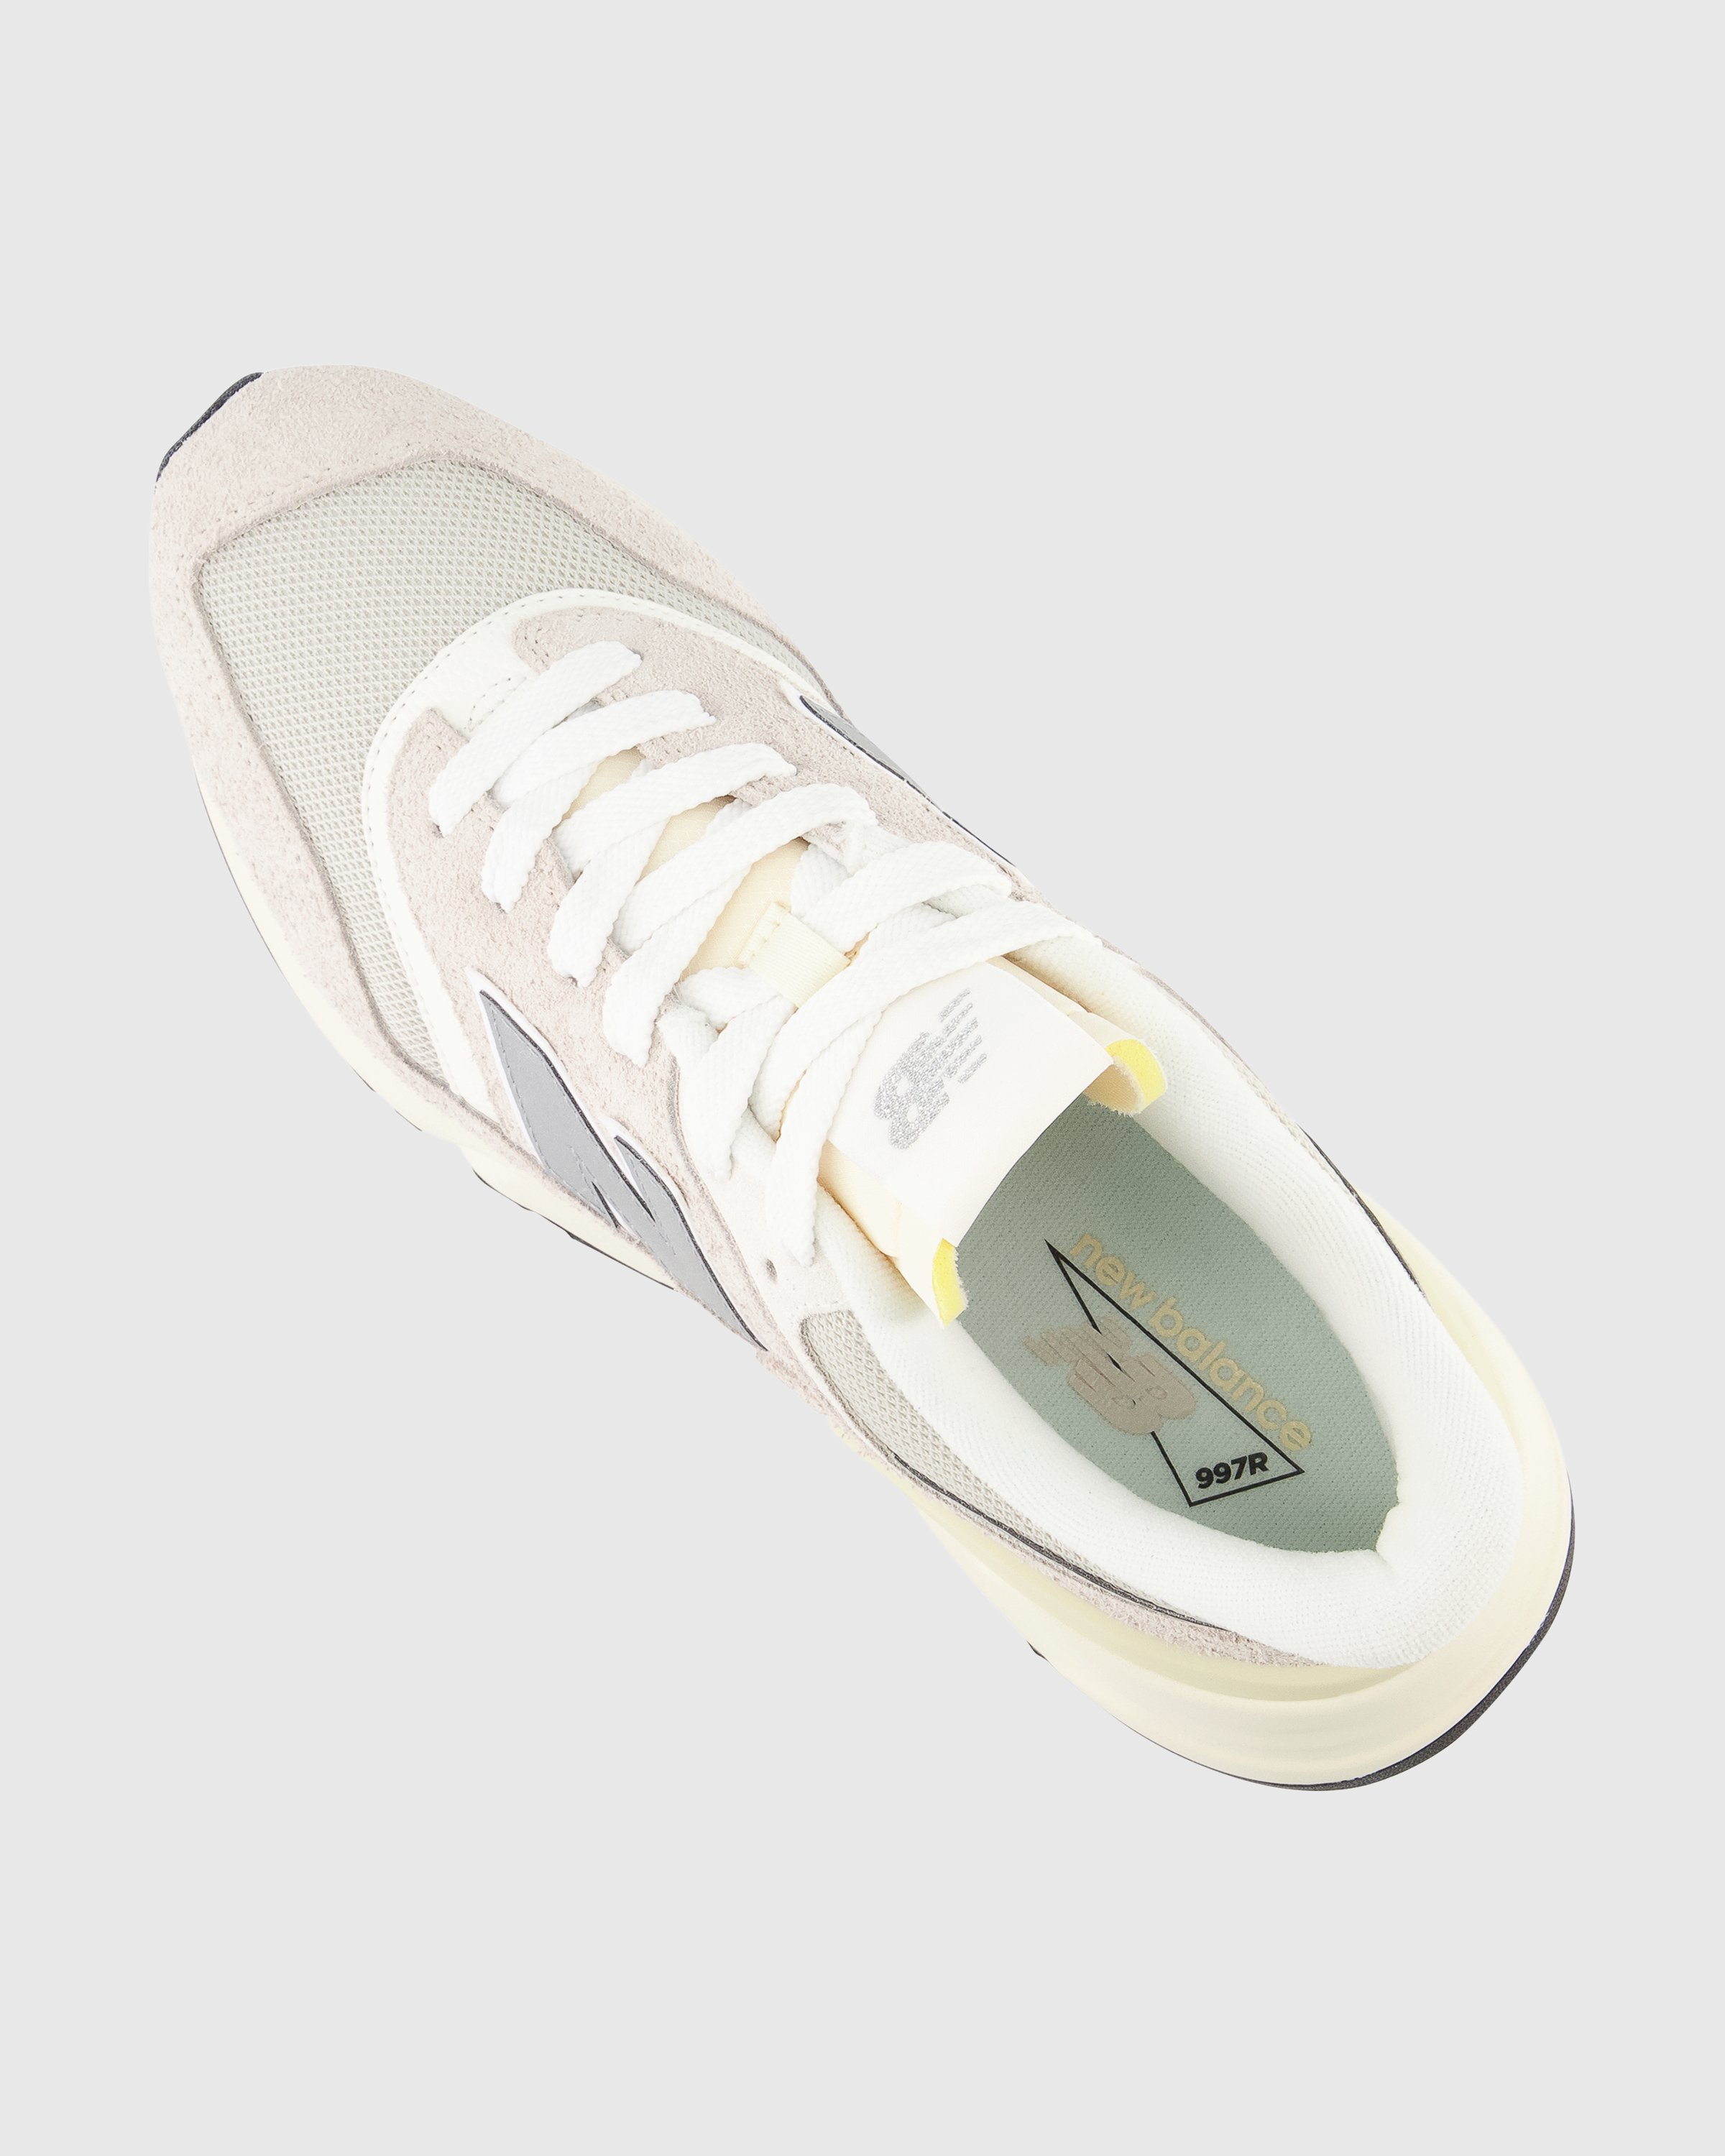 New Balance - U 997R CB Grey - Footwear - Grey - Image 4